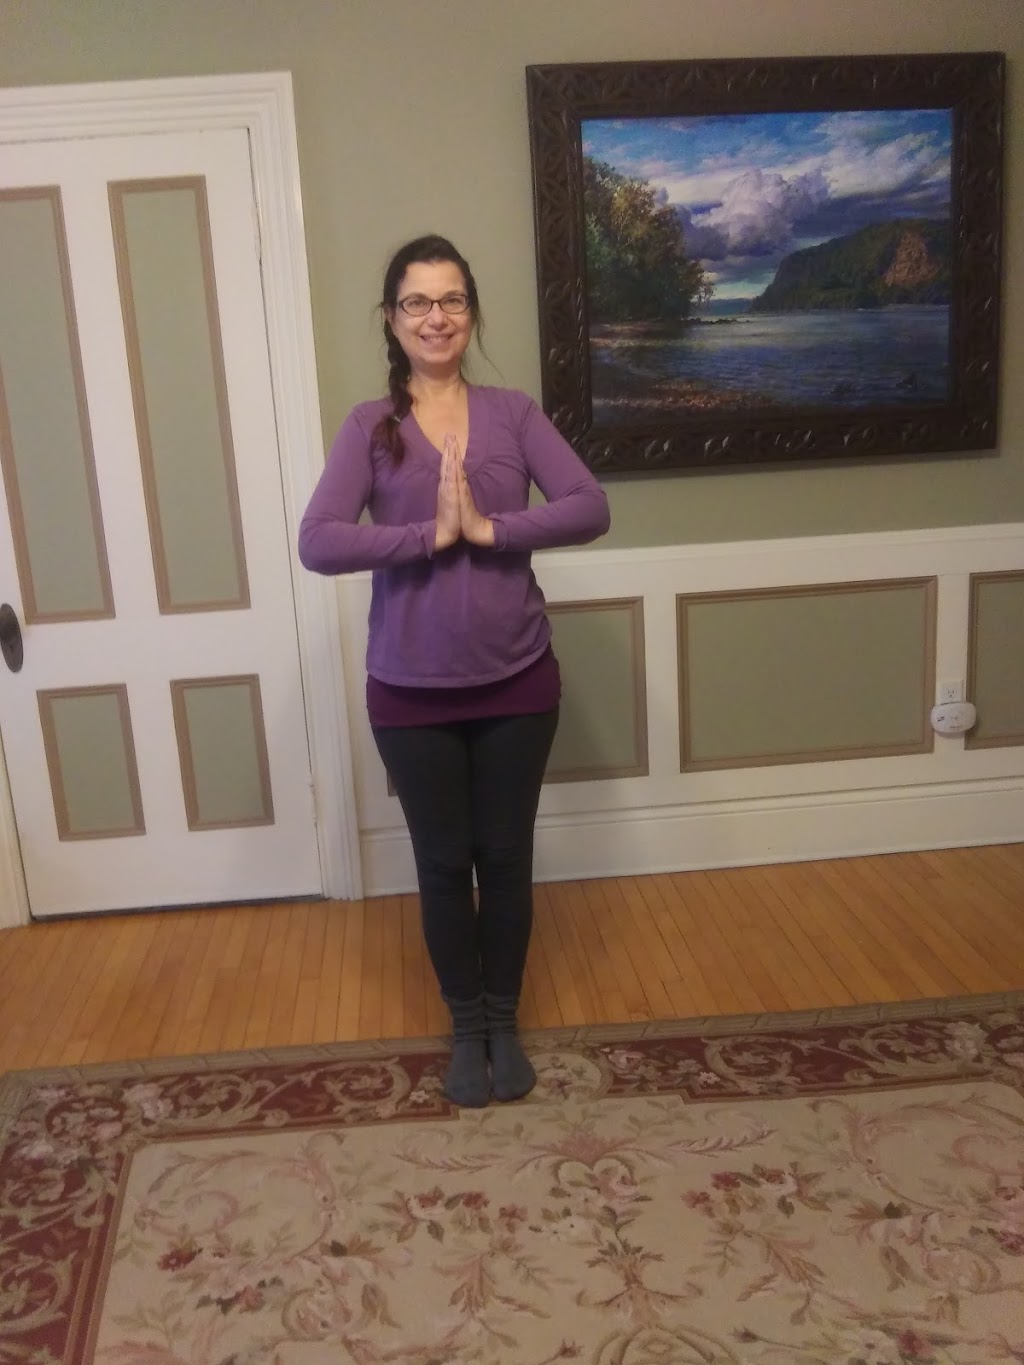 Bliss Body Yoga at Home | 39 Bloom St, Marlboro, NY 12542 | Phone: (845) 236-3939